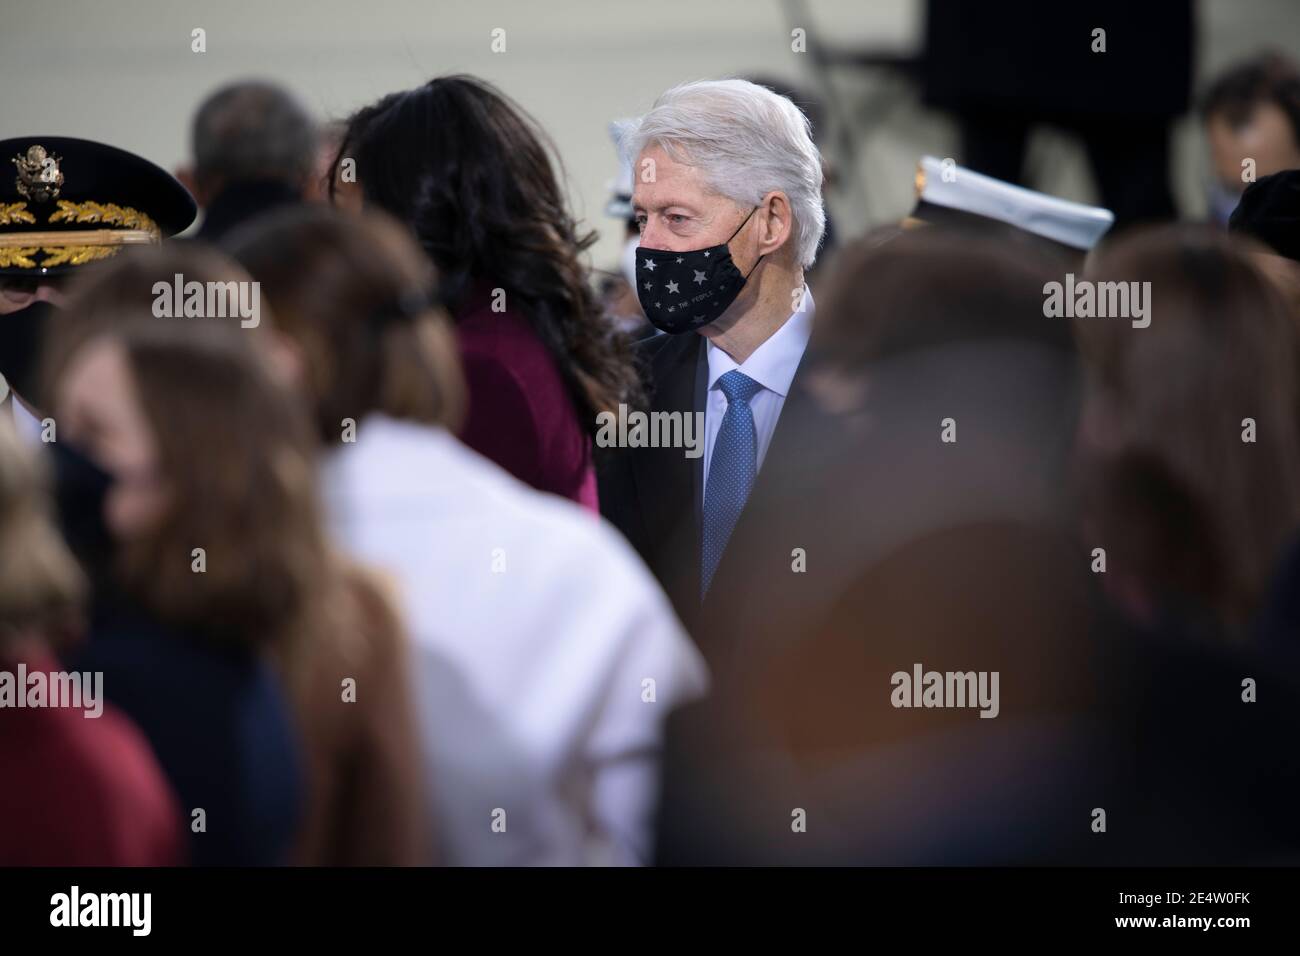 L'ancien président Bill Clinton arrive pour la 59e cérémonie d'inauguration présidentielle au front ouest du Capitole des États-Unis le 20 janvier 2021 à Washington Banque D'Images